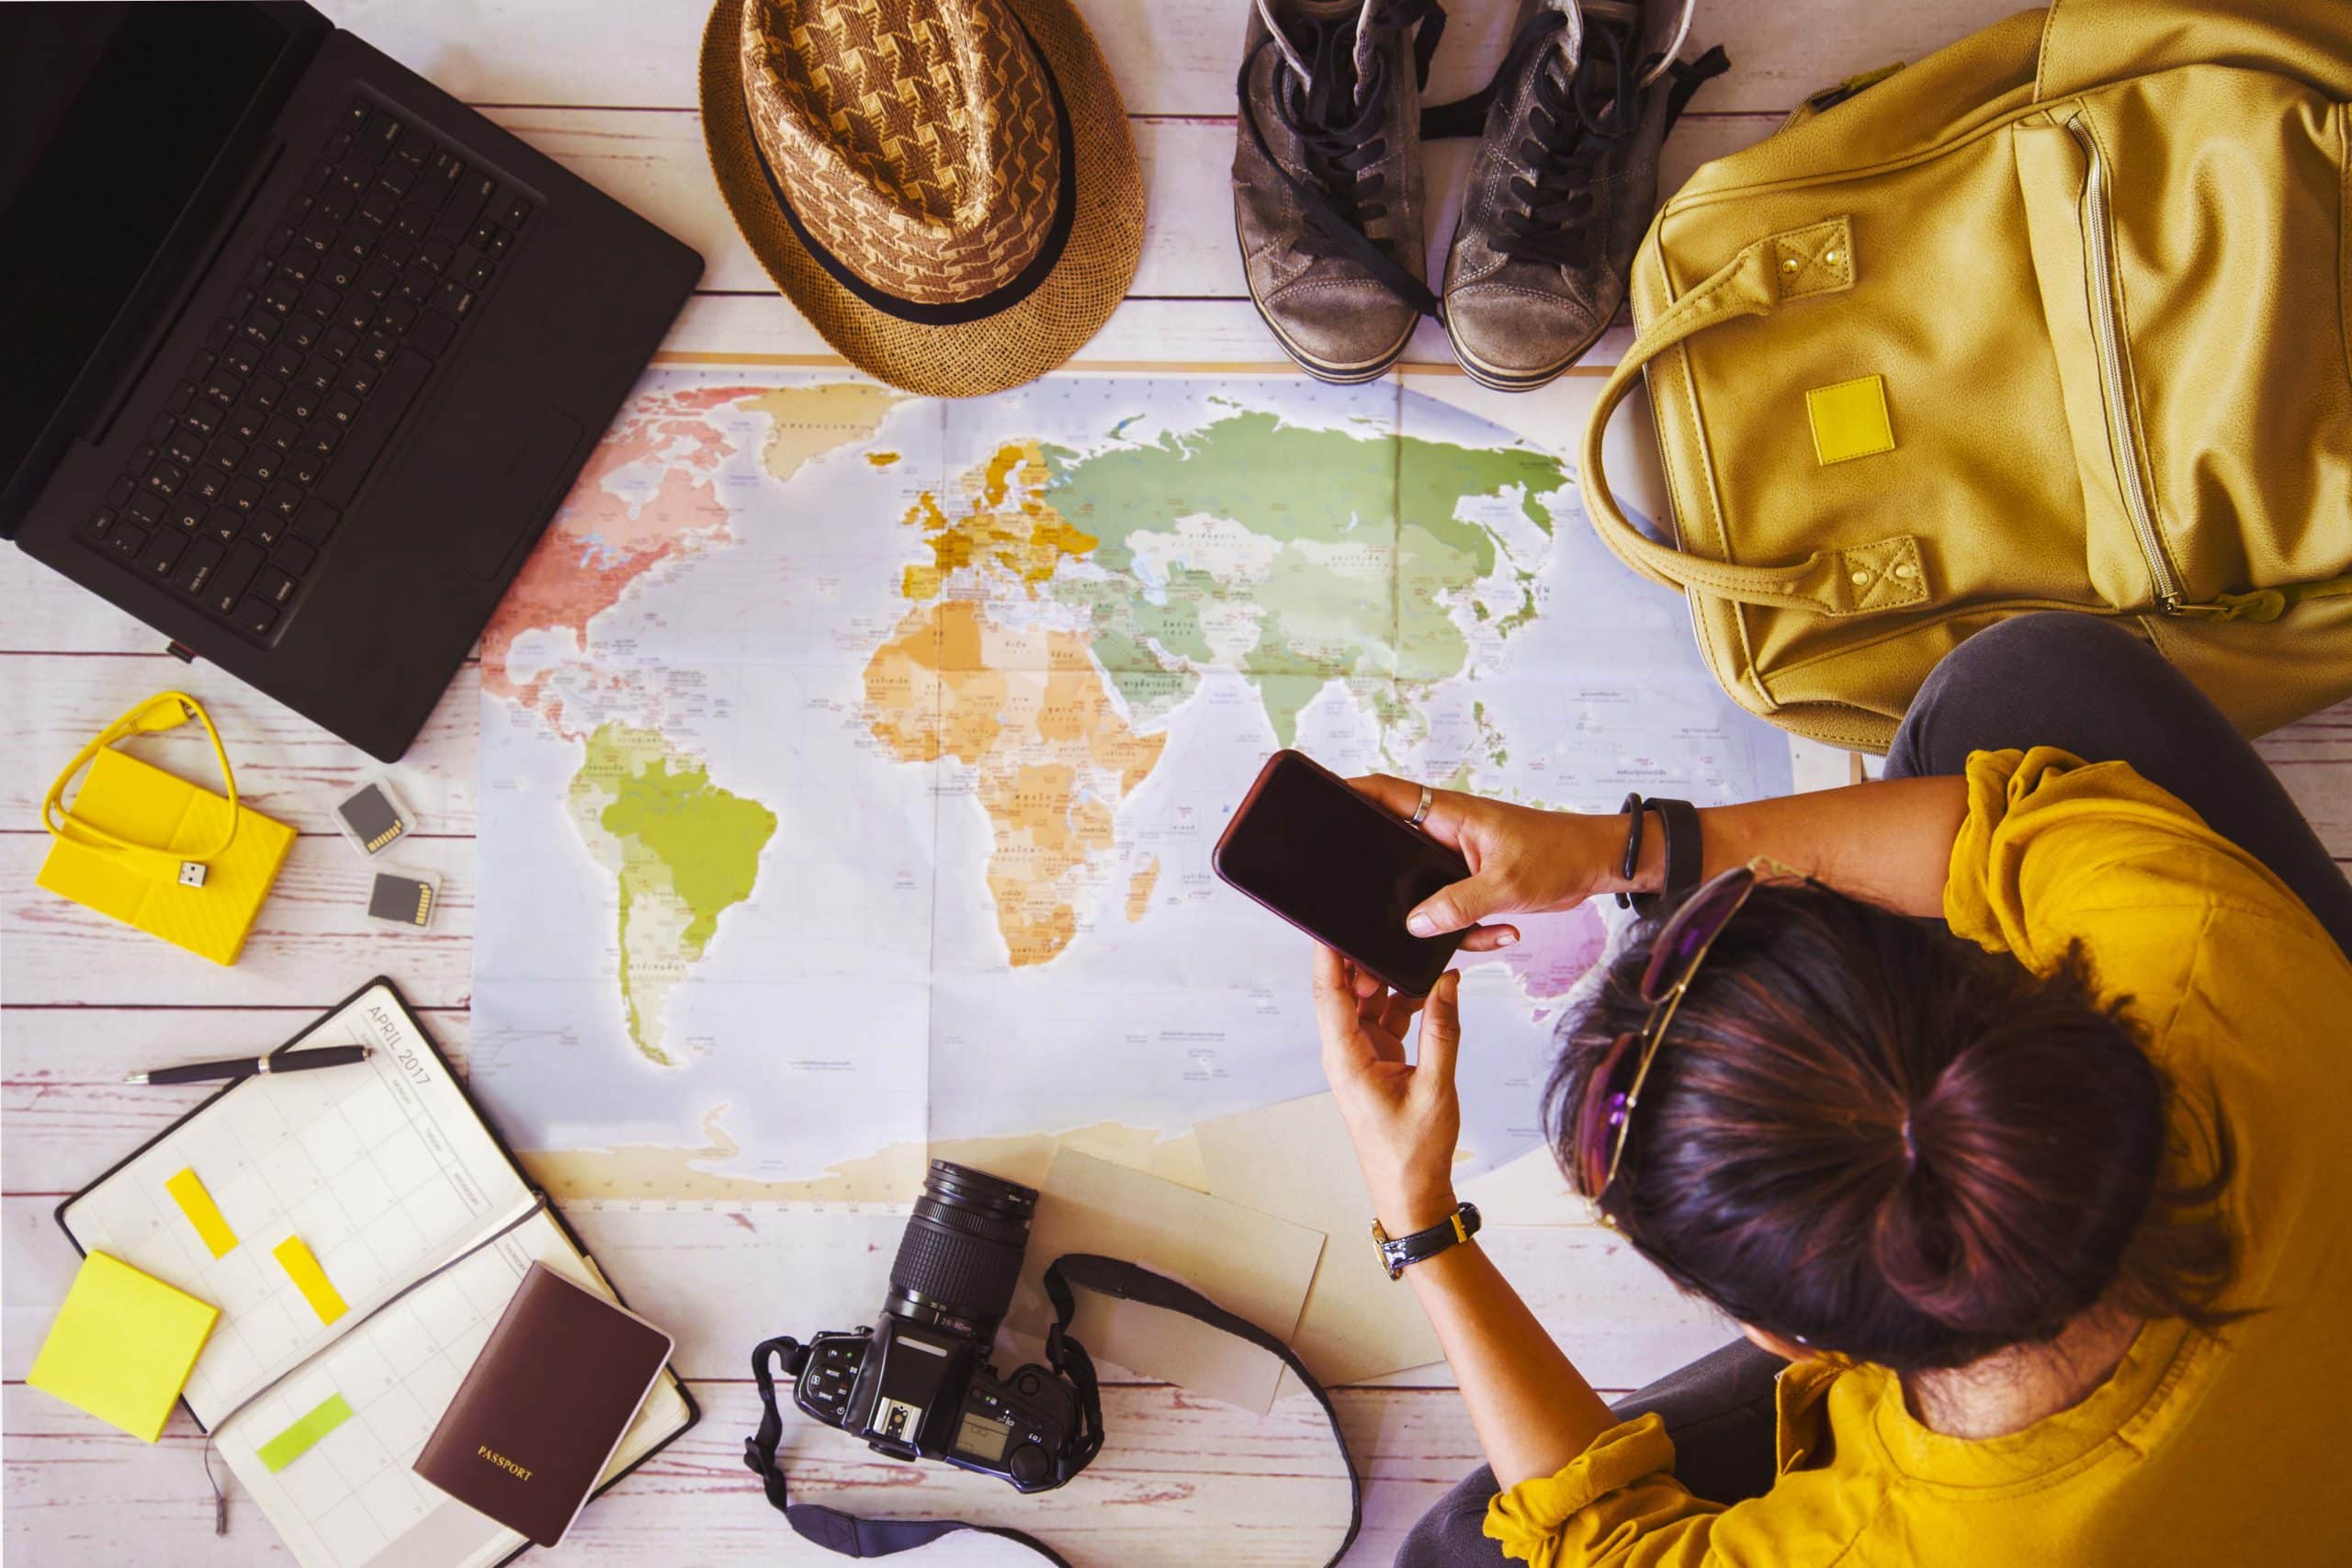 pessoa planejando viagem com um mapa, mochila, passaporte e notebook